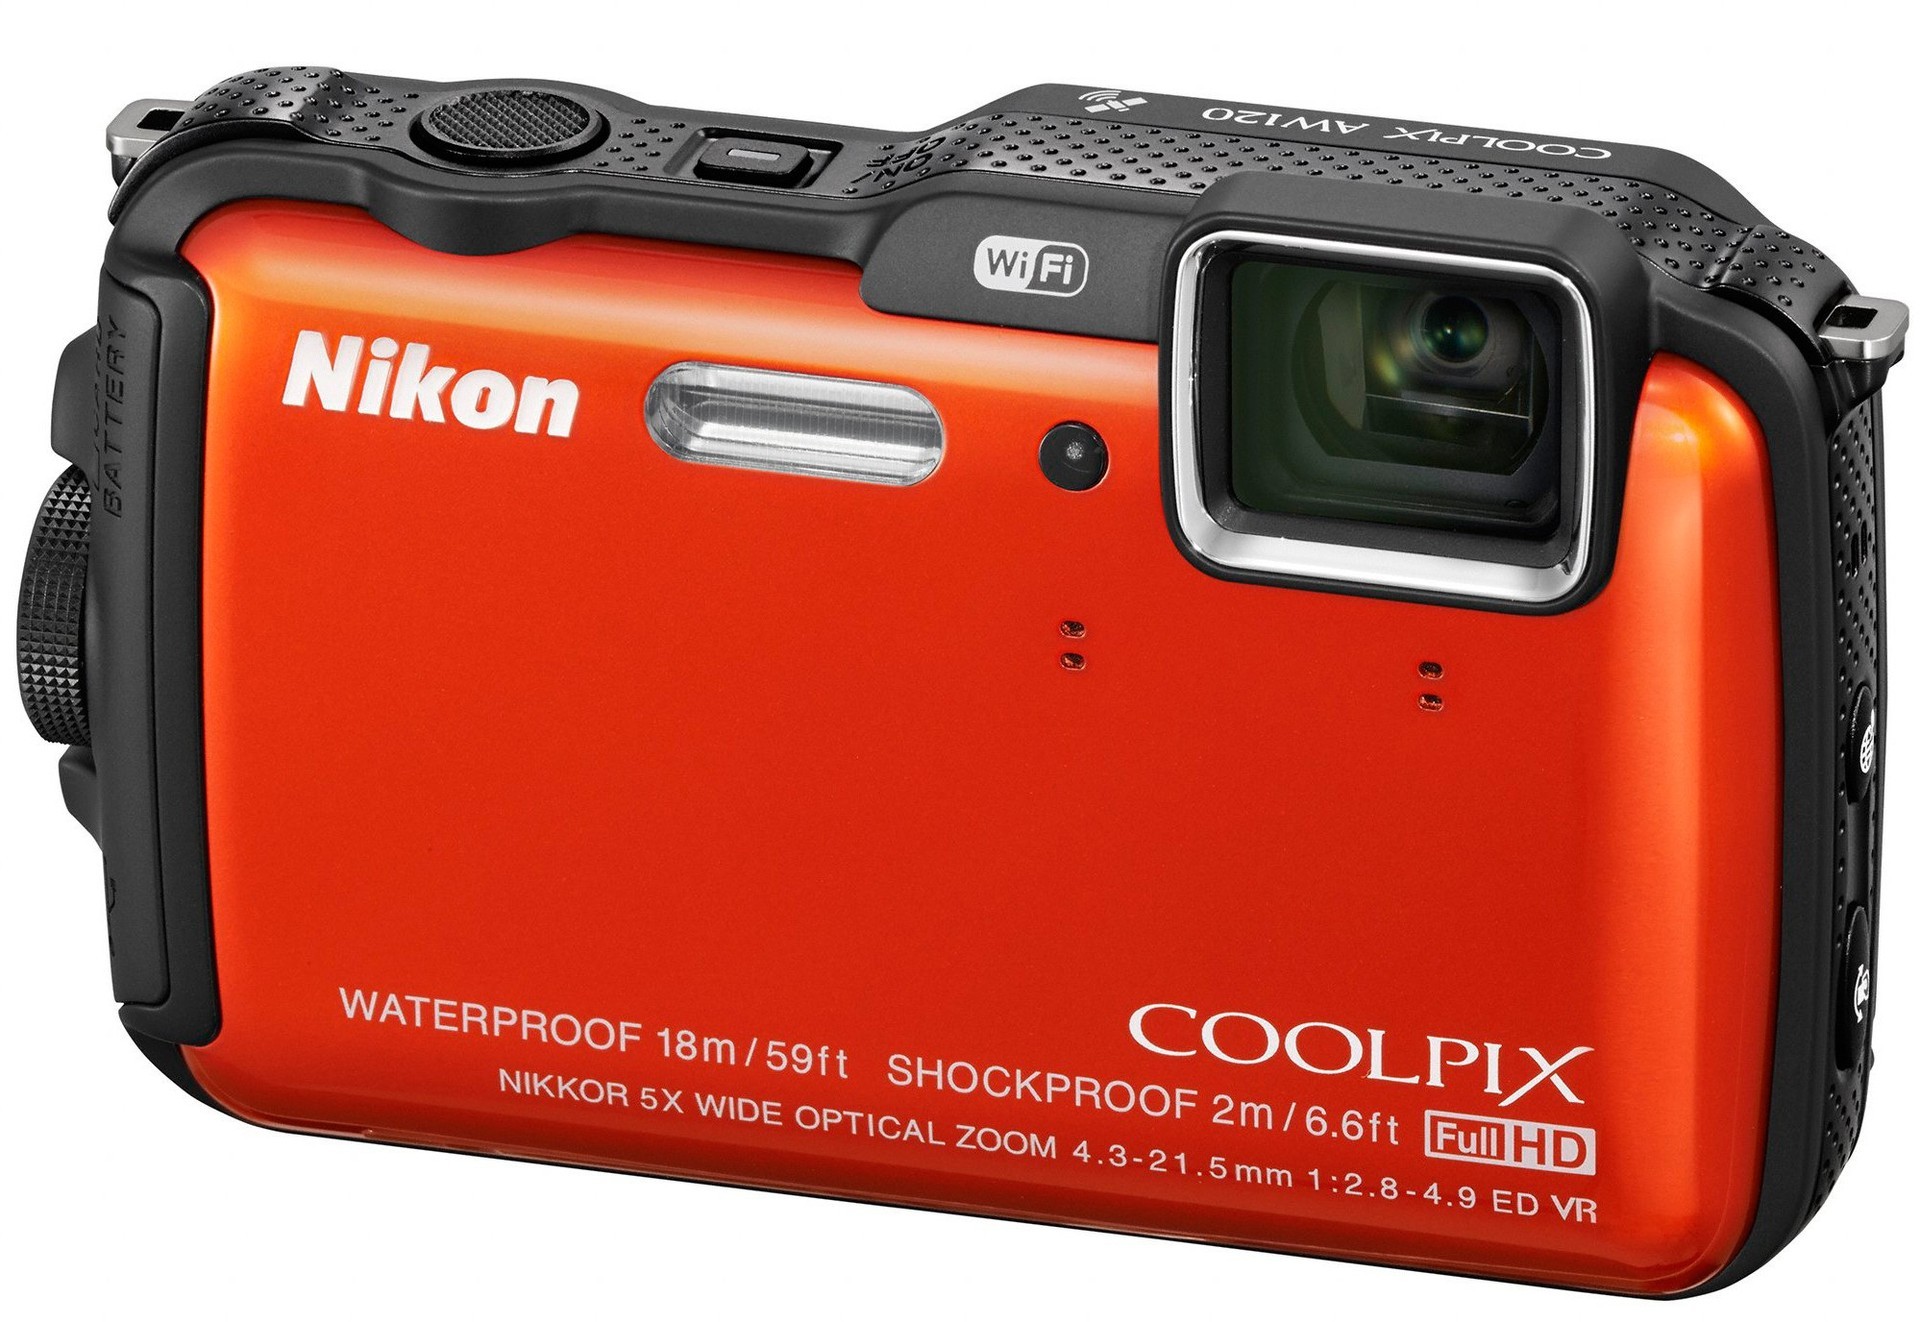 Nikon Coolpix Aw120 Review 5771